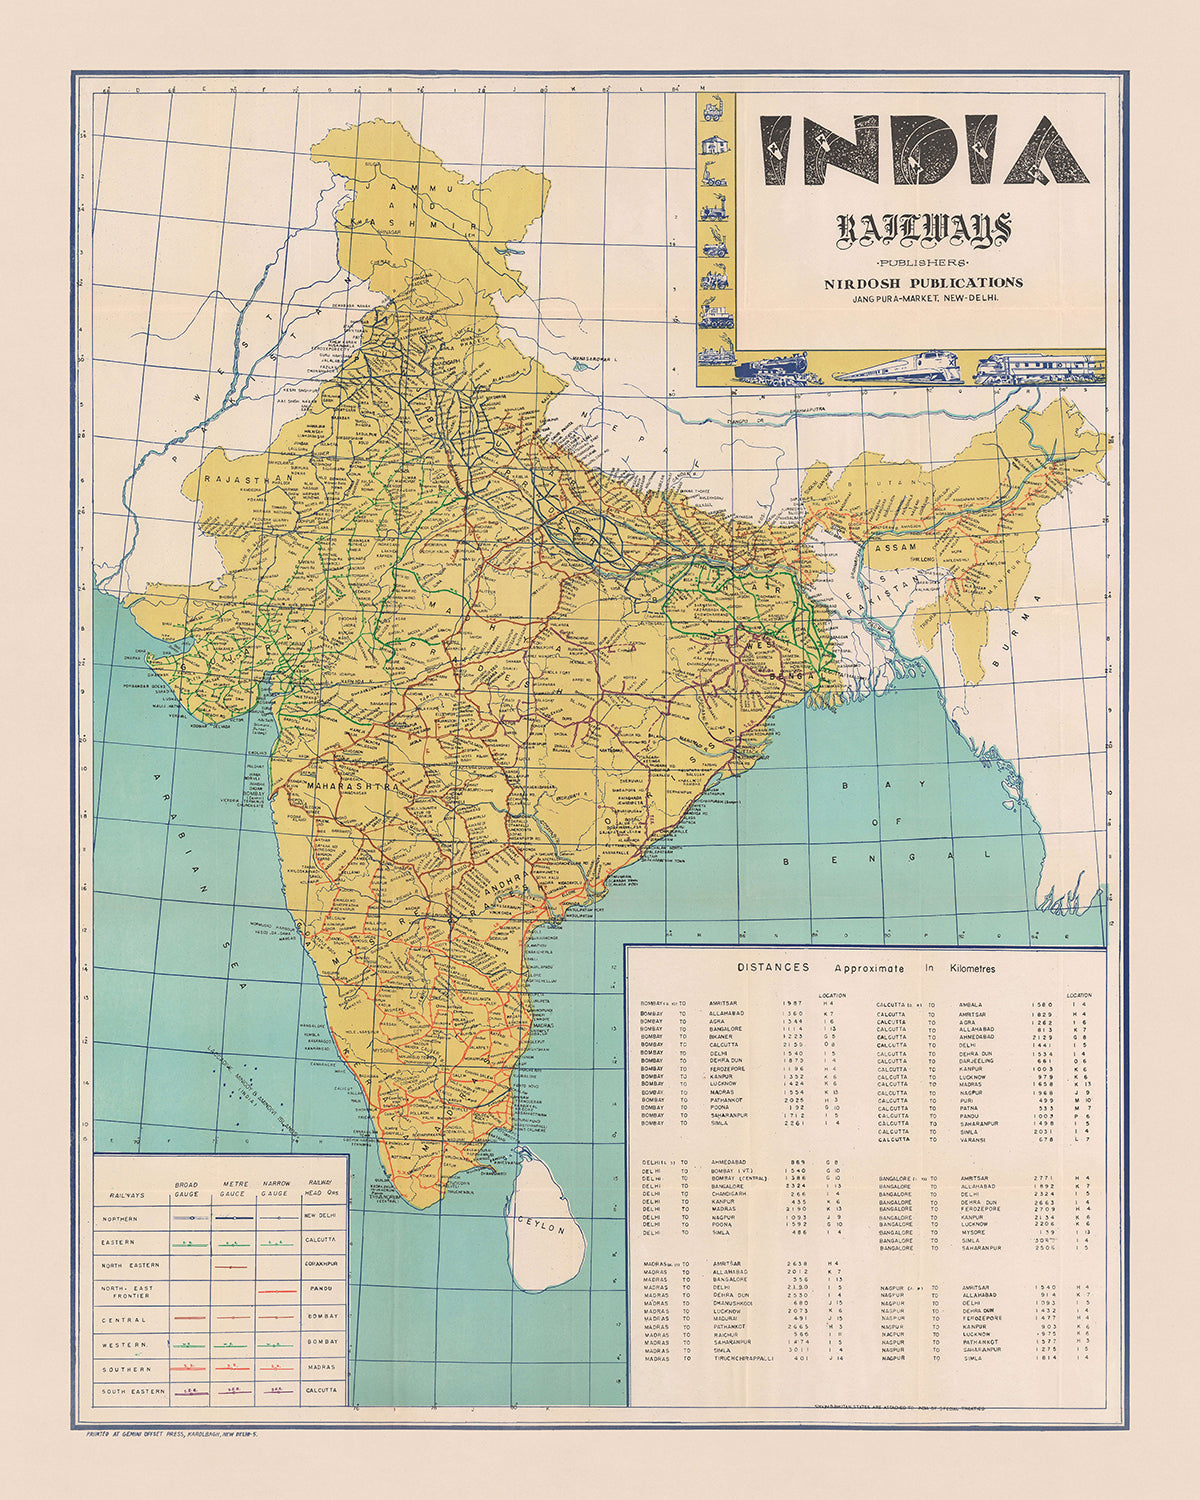 Ancienne carte de l'Inde par Nirdosh Publications, 1960 : chemins de fer, Mumbai, Delhi, Calcutta, Chennai, Bangalore